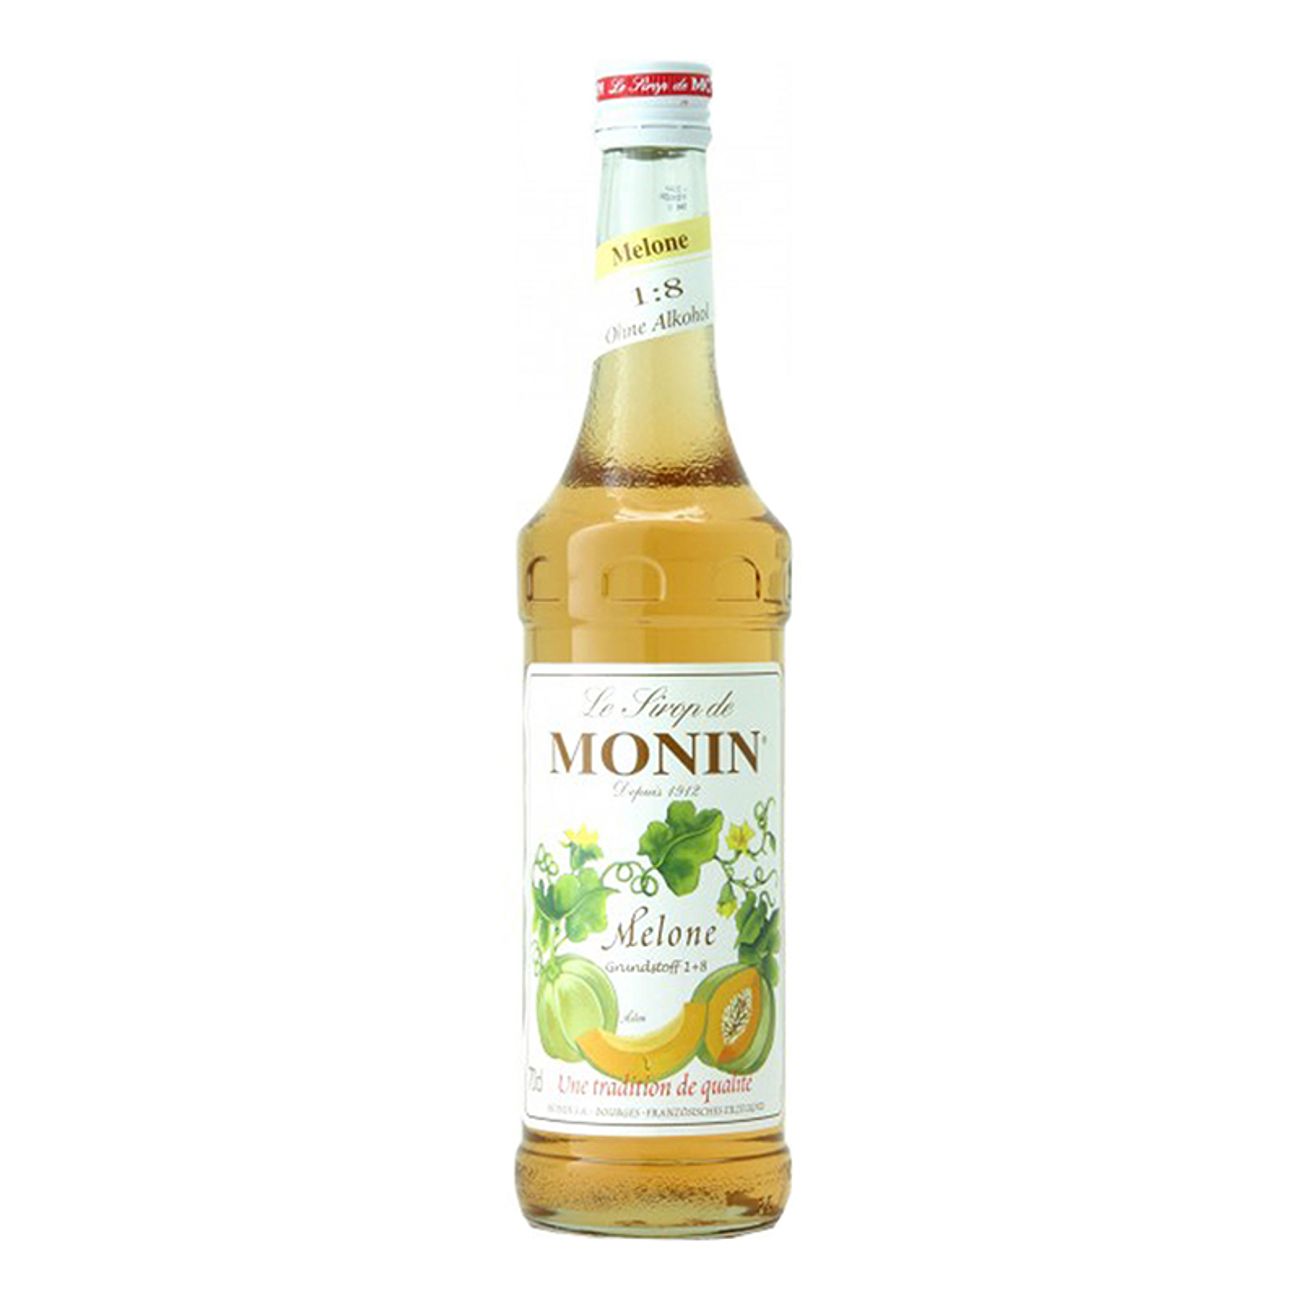 monin-melon-drinkmix-1